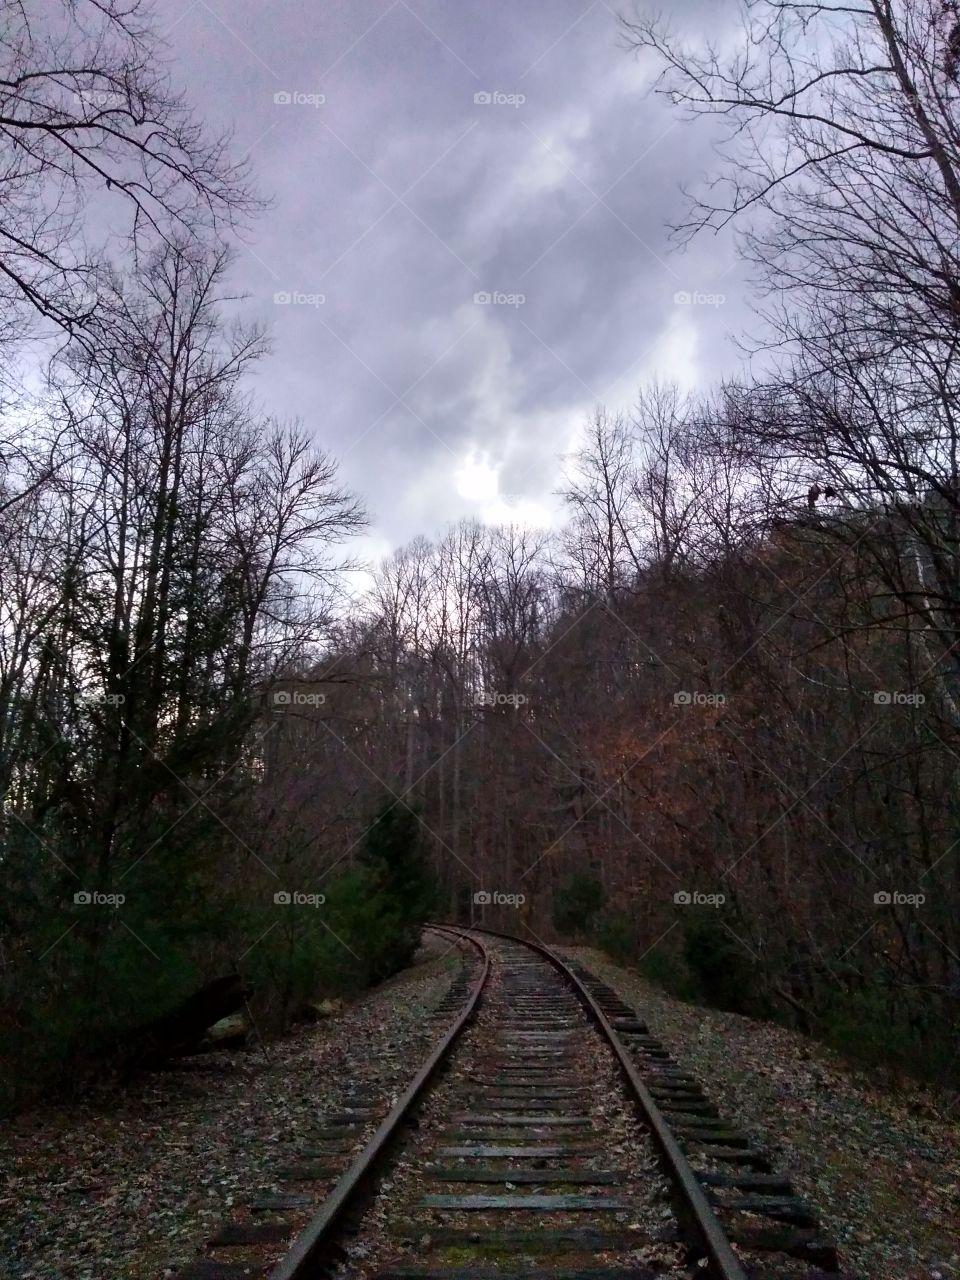 Great Smokey's Railroad